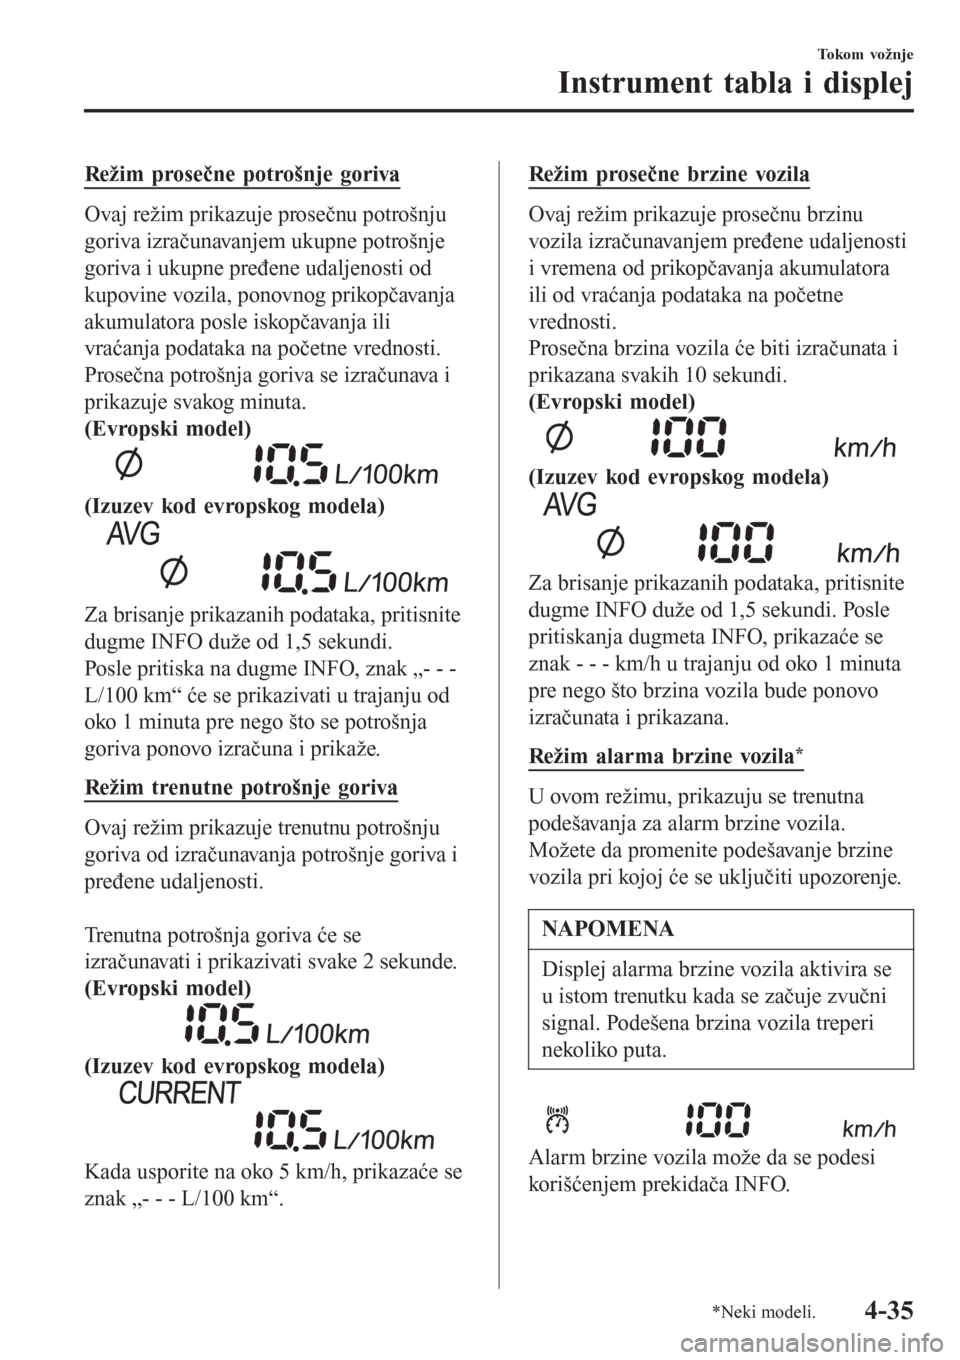 MAZDA MODEL CX-3 2016  Korisničko uputstvo (in Serbian) Režim prosečne potrošnje goriva
Ovaj režim prikazuje prosečnu potrošnju
goriva izračunavanjem ukupne potrošnje
goriva i ukupne pređene udaljenosti od
kupovine vozila, ponovnog prikopčavanja
